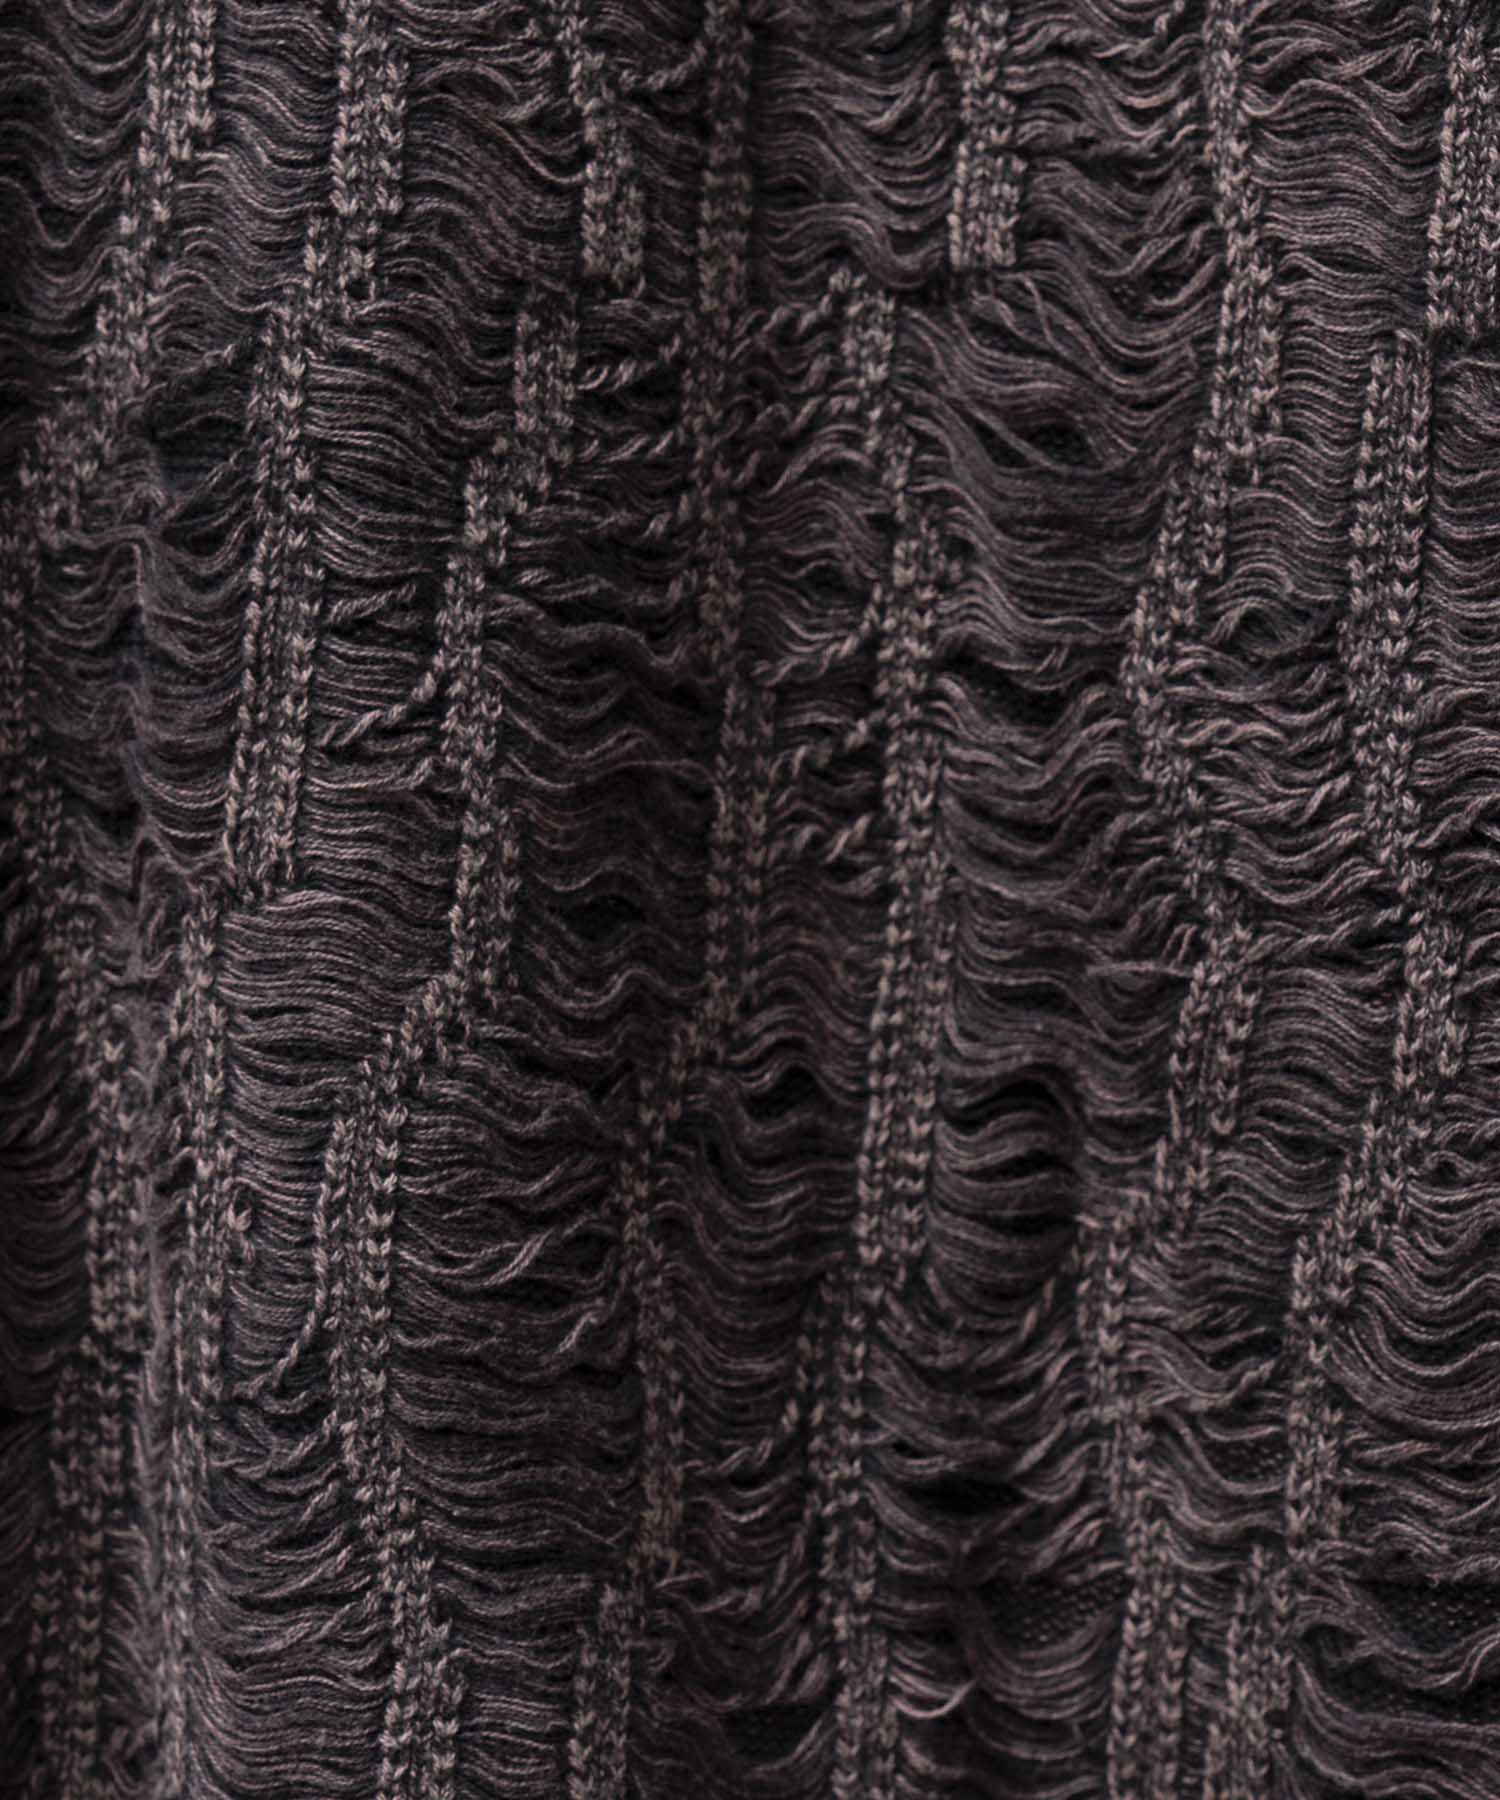 Snow Wash Destroy Fringe Denim Knit Prime-Over V-Neck Pullover